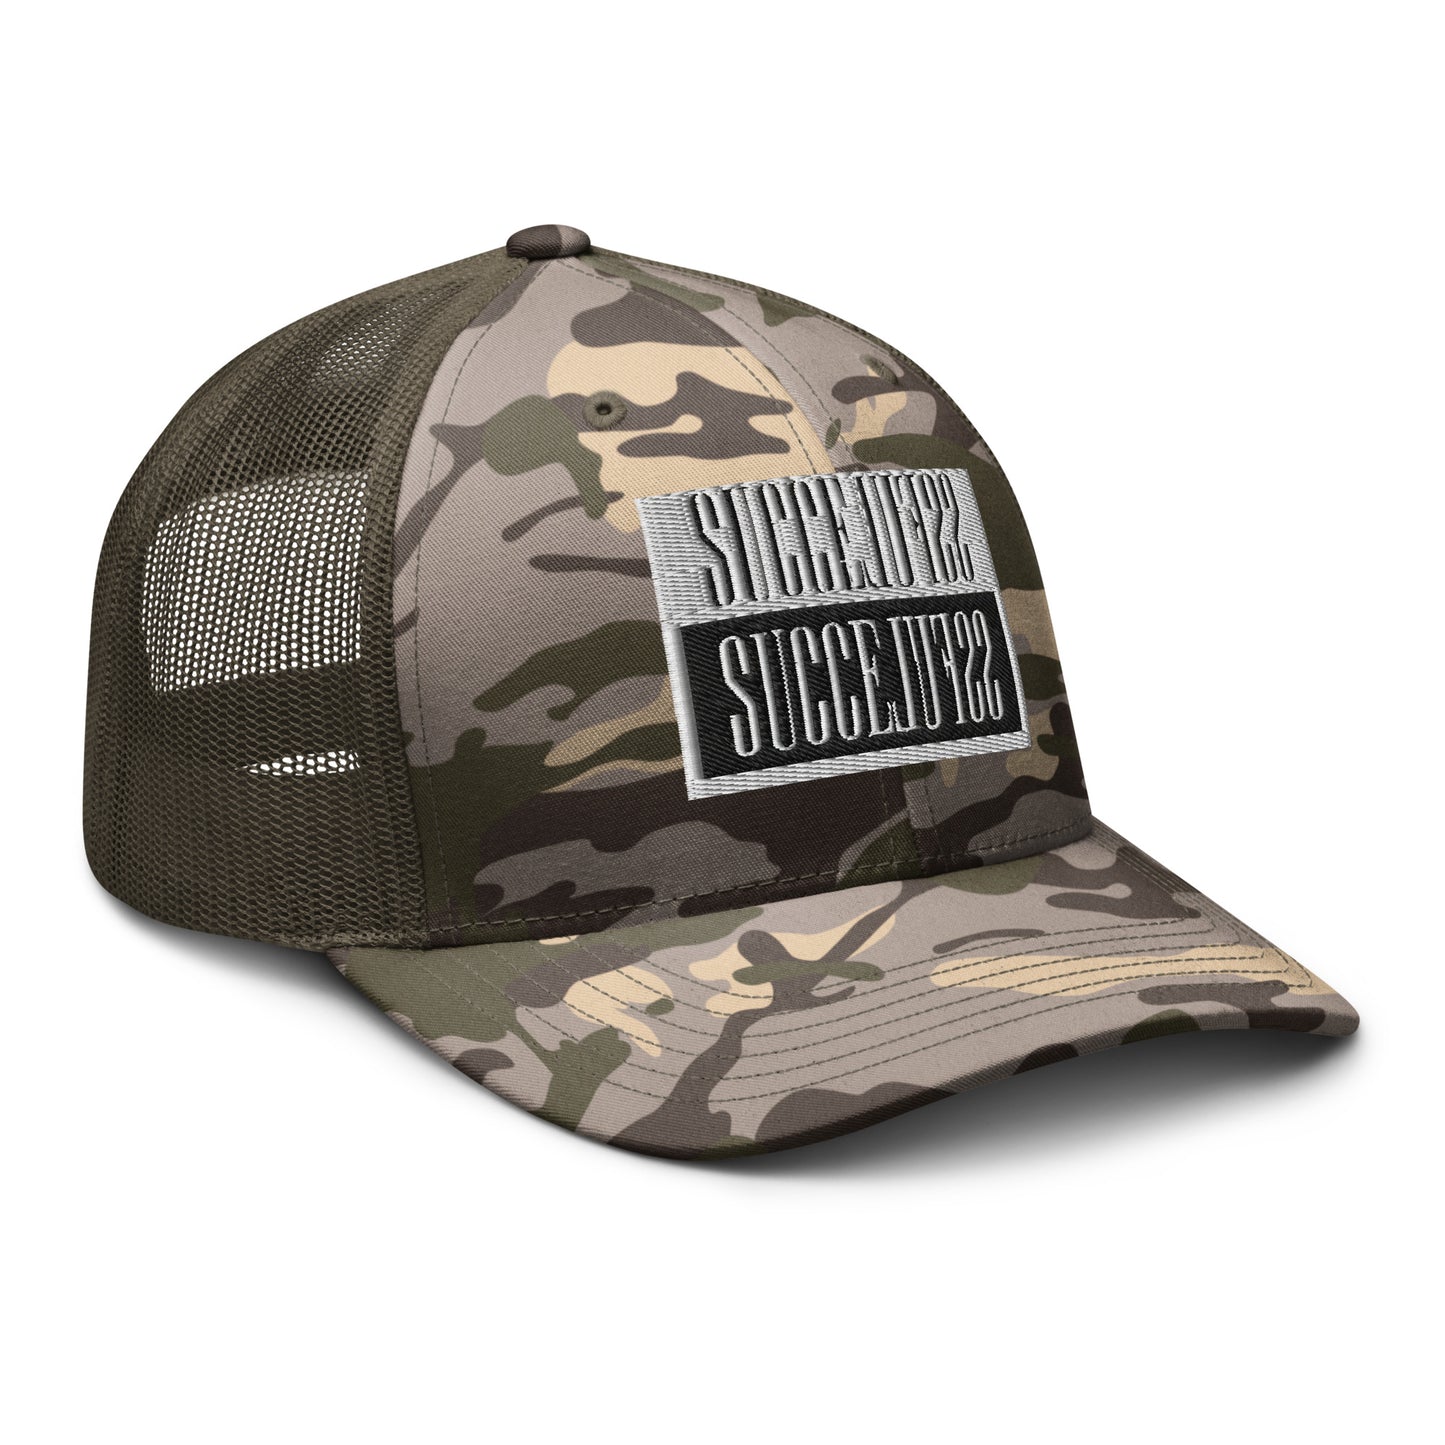 Camouflage trucker hat sale